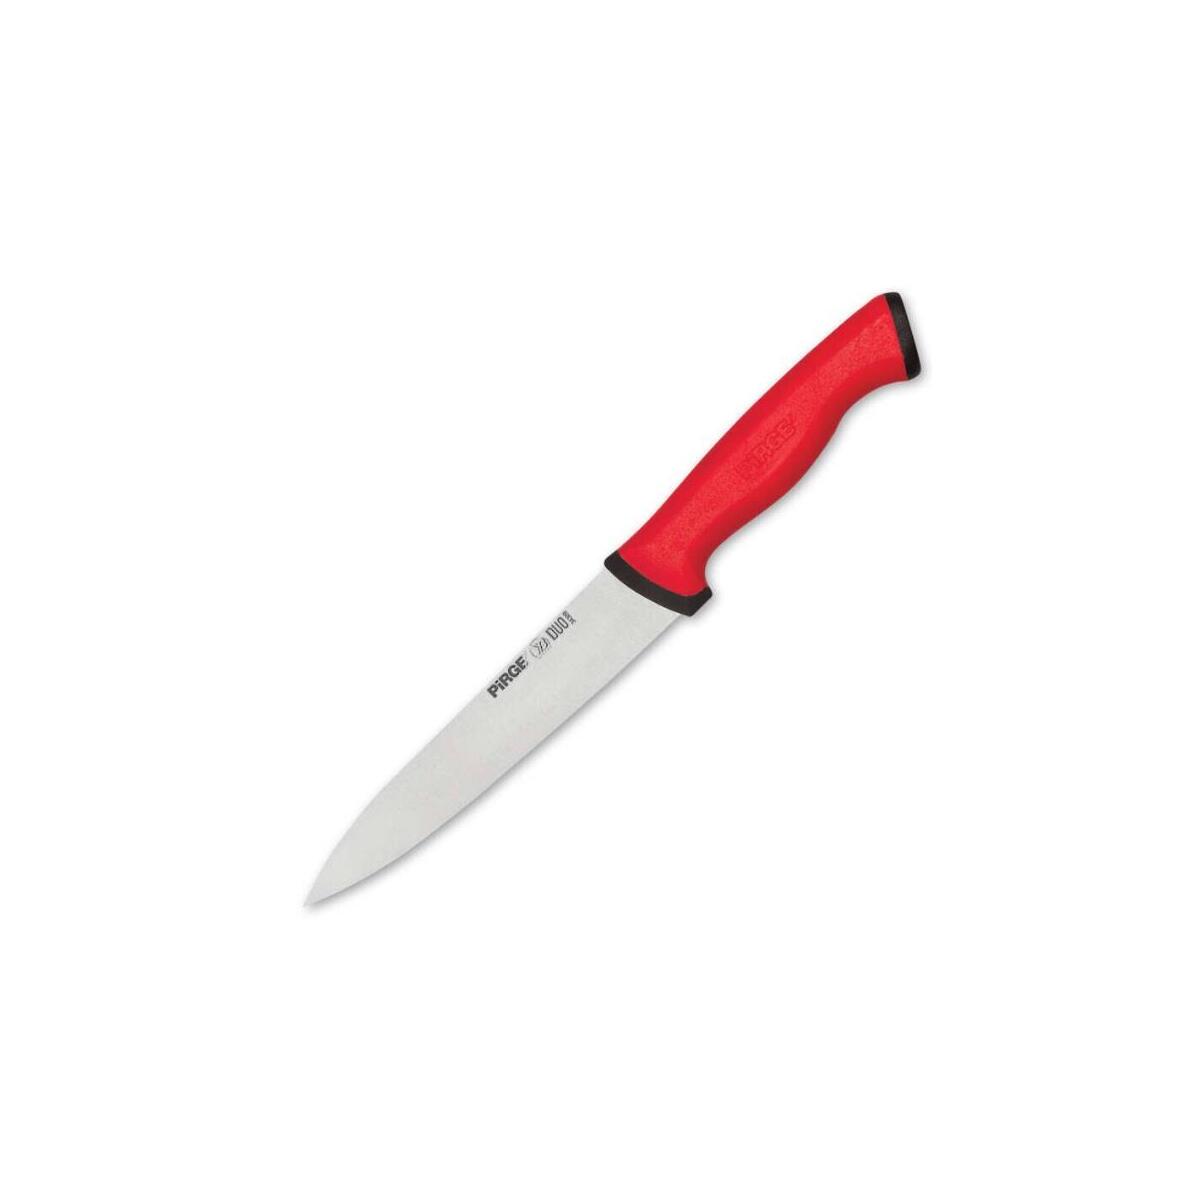 Pirge Kasap Dilimleme Bıçağı Duo 34311 16Cm Kırmızı